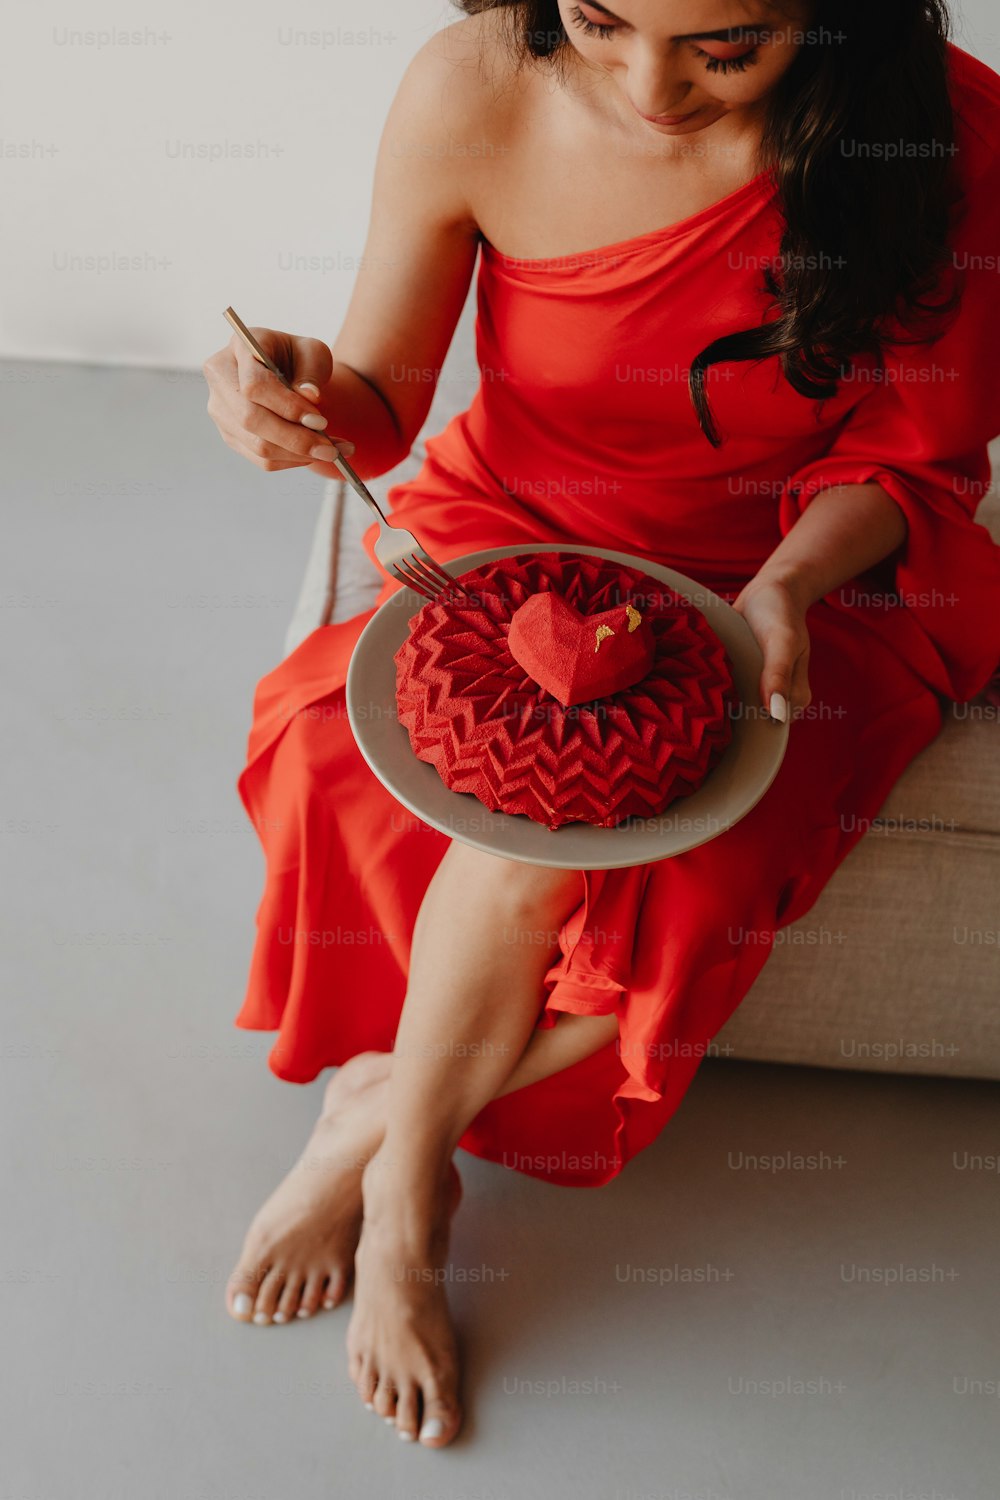 Una mujer con un vestido rojo sosteniendo un pastel en forma de corazón